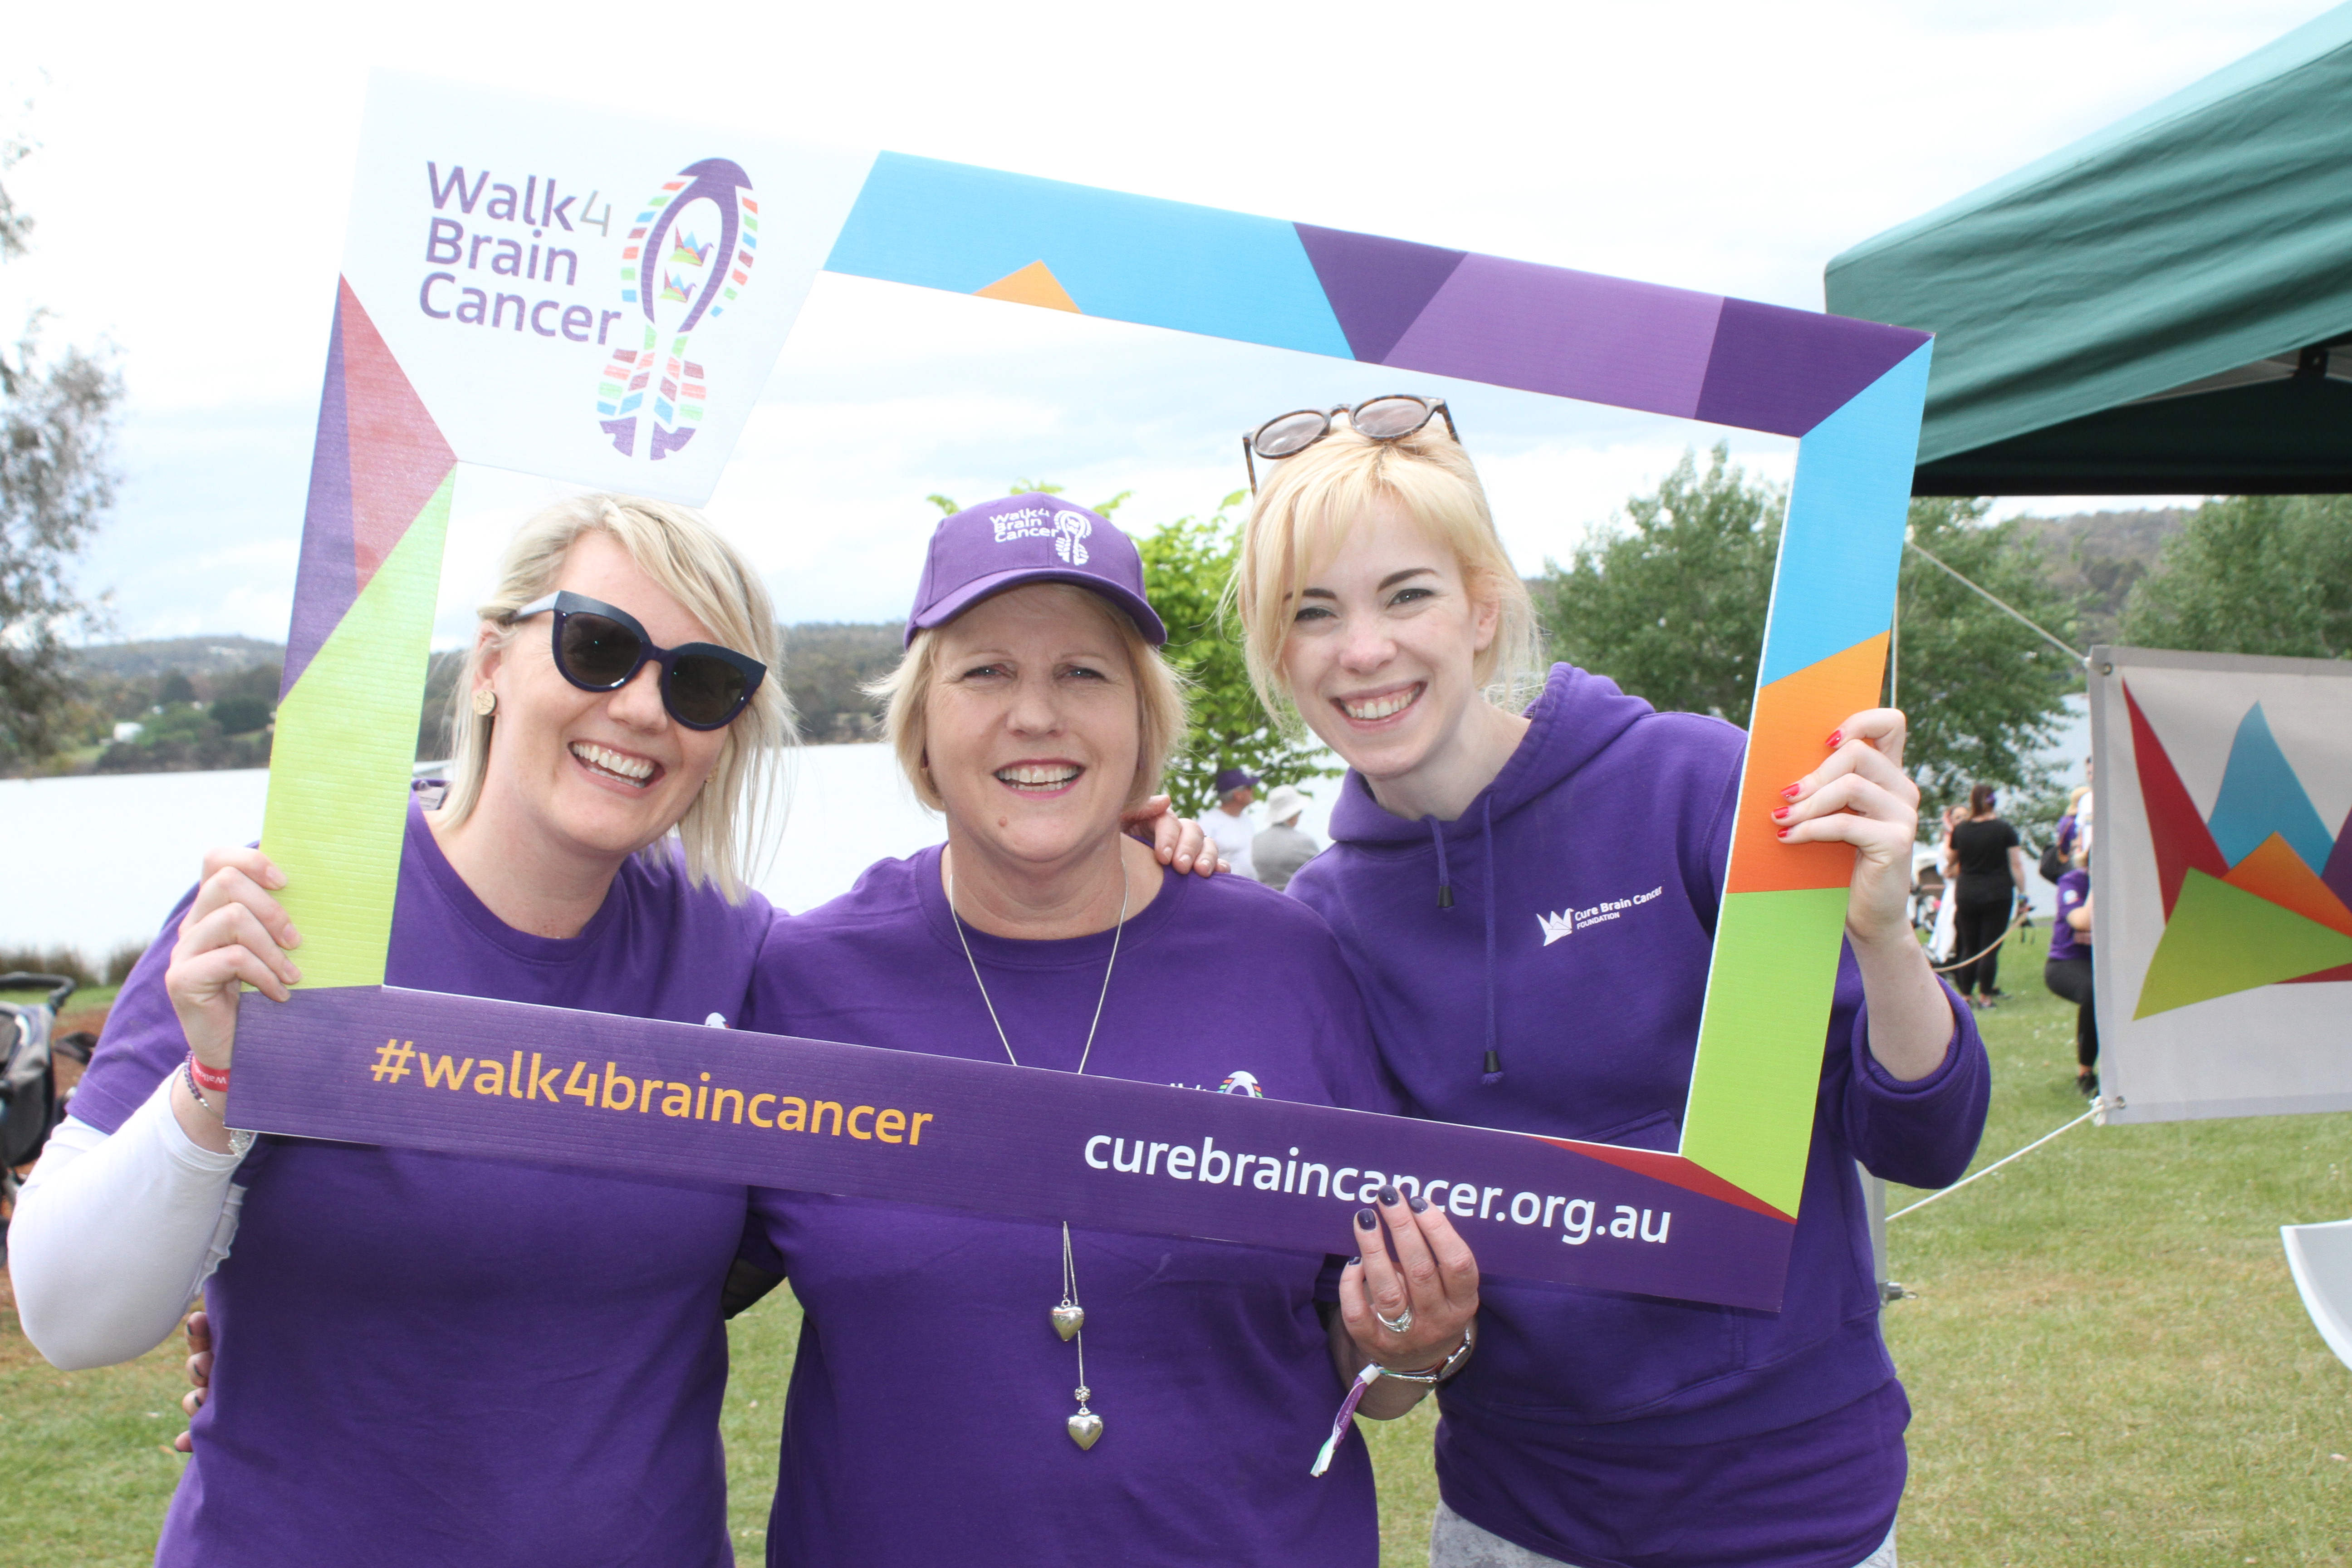 Cancer fundraiser walk success